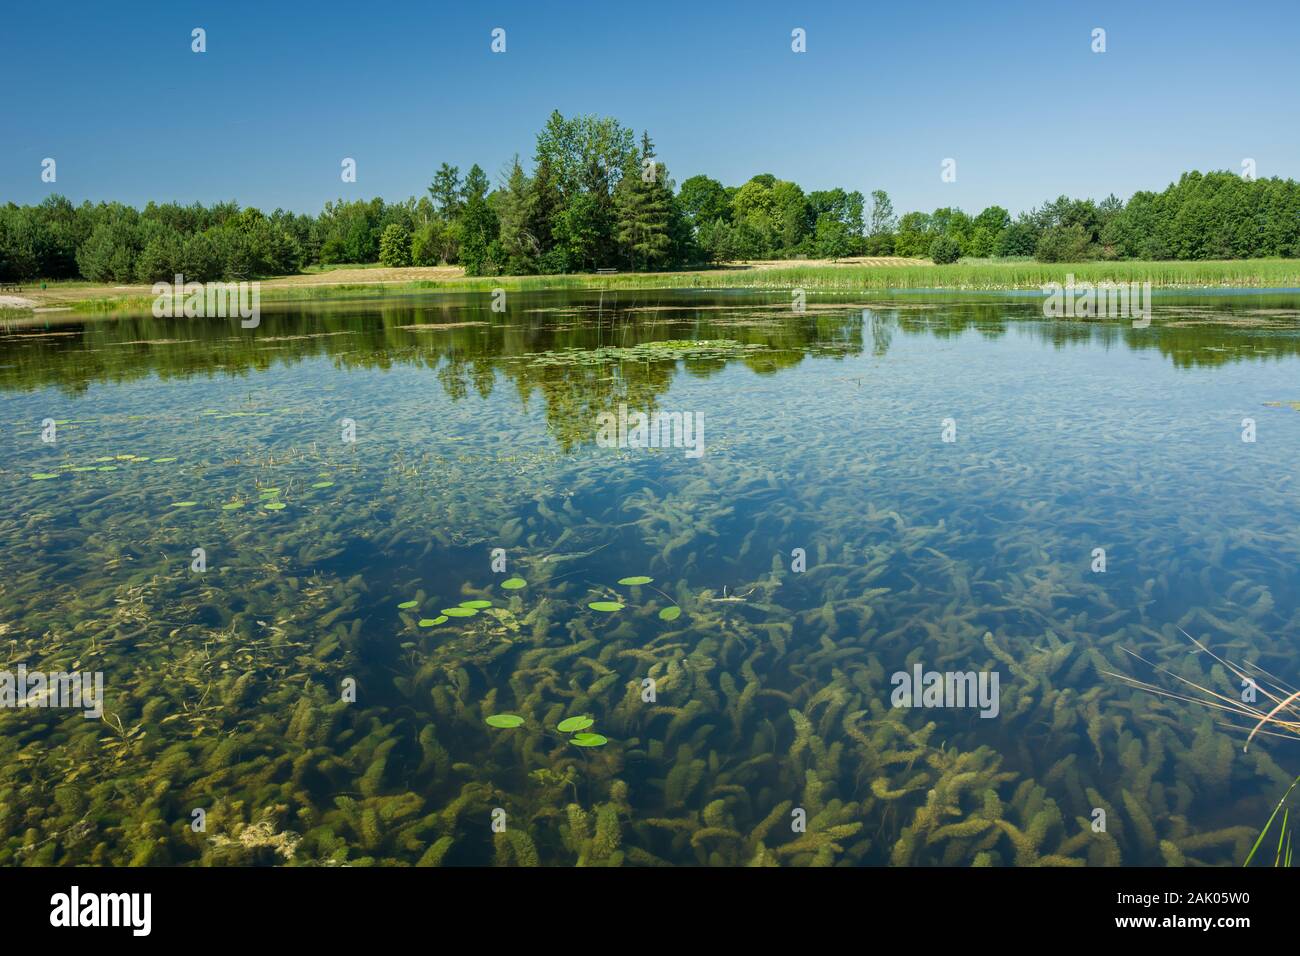 Anzeigen von Pflanzen unter Wasser, Bäume am Ufer und blauer Himmel. Dubienka, Polen Stockfoto